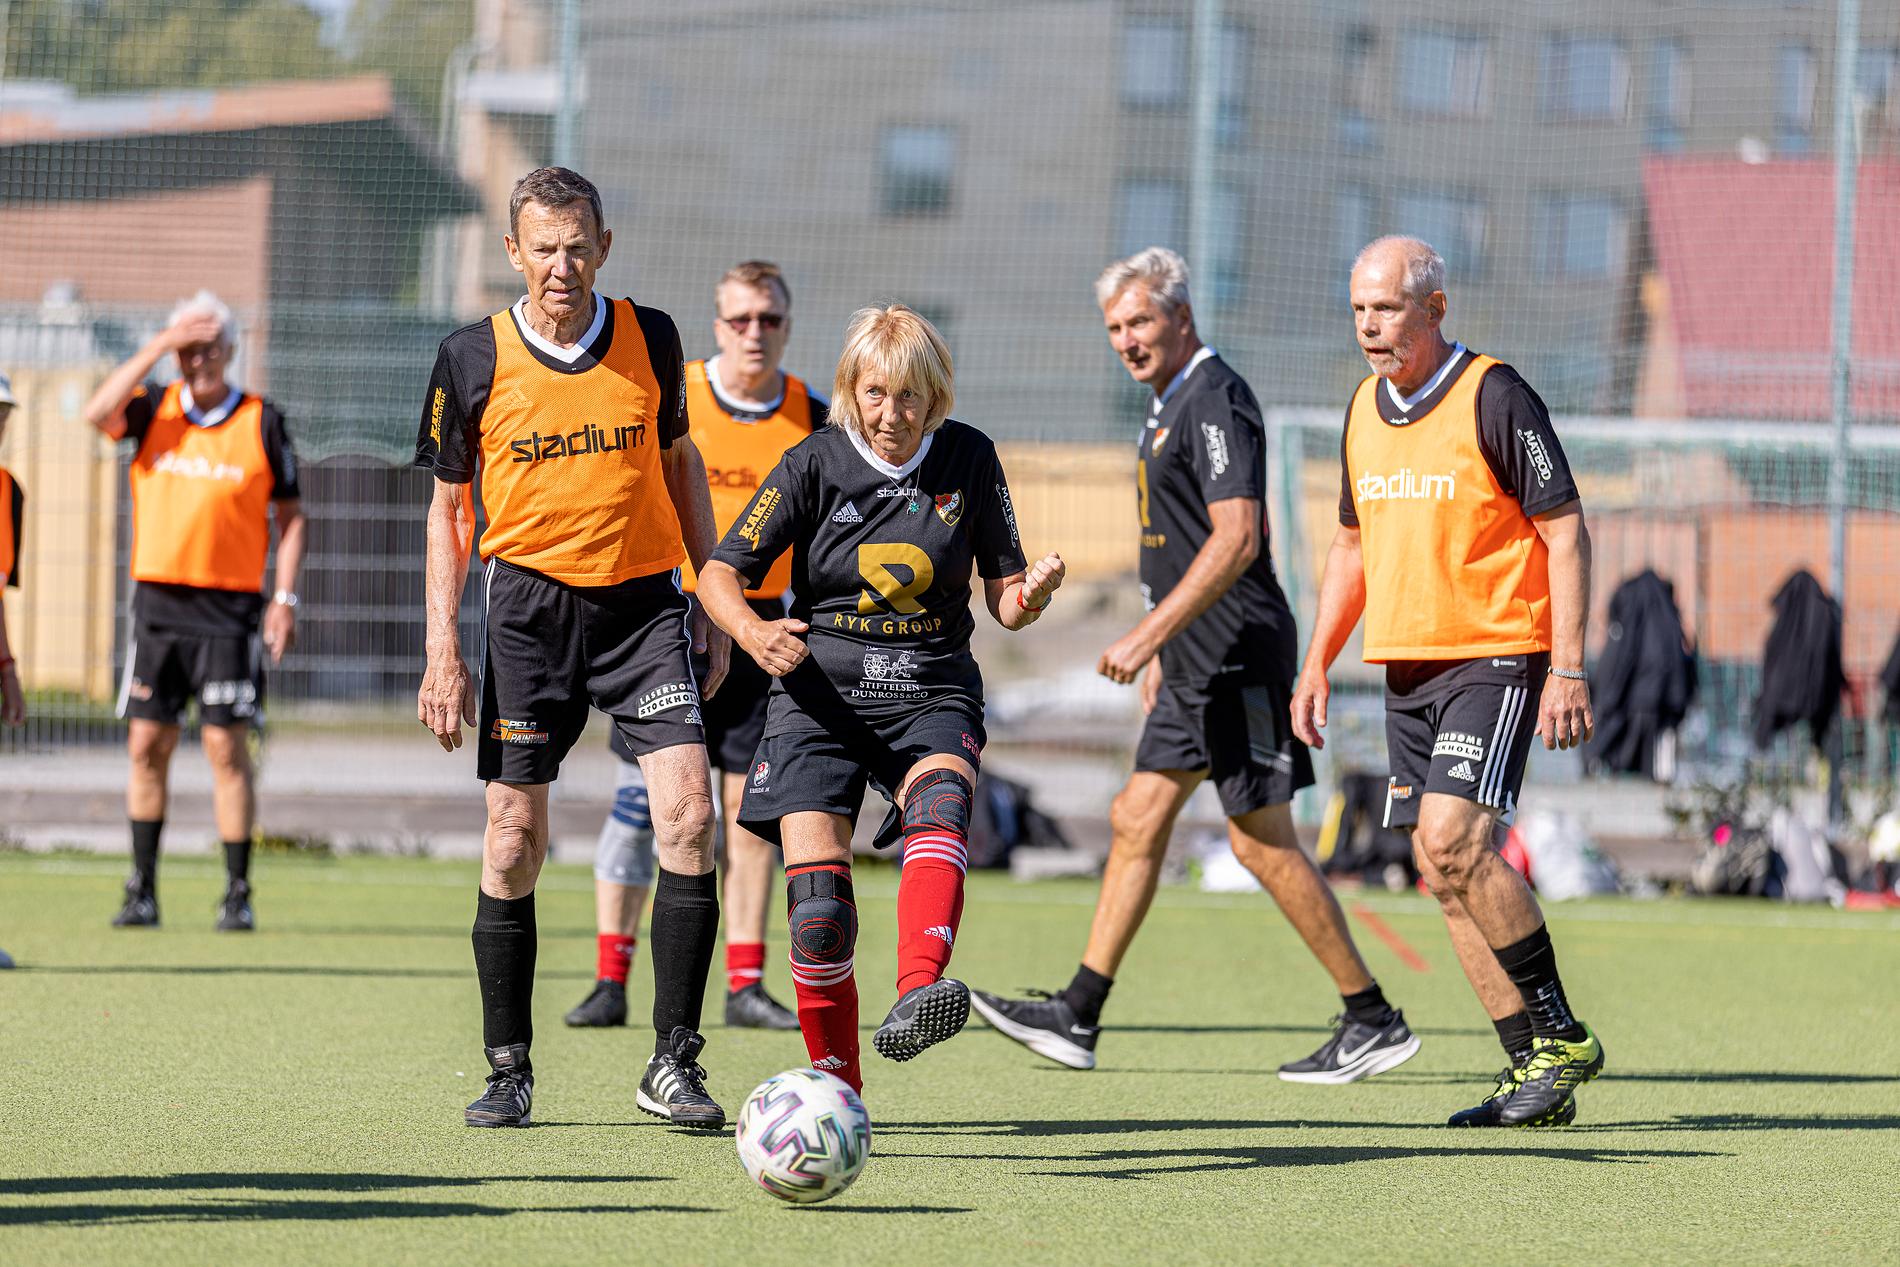 Just nu finns det runt hundra gåfotbollslag i Sverige, enligt fotbollförbundet. 